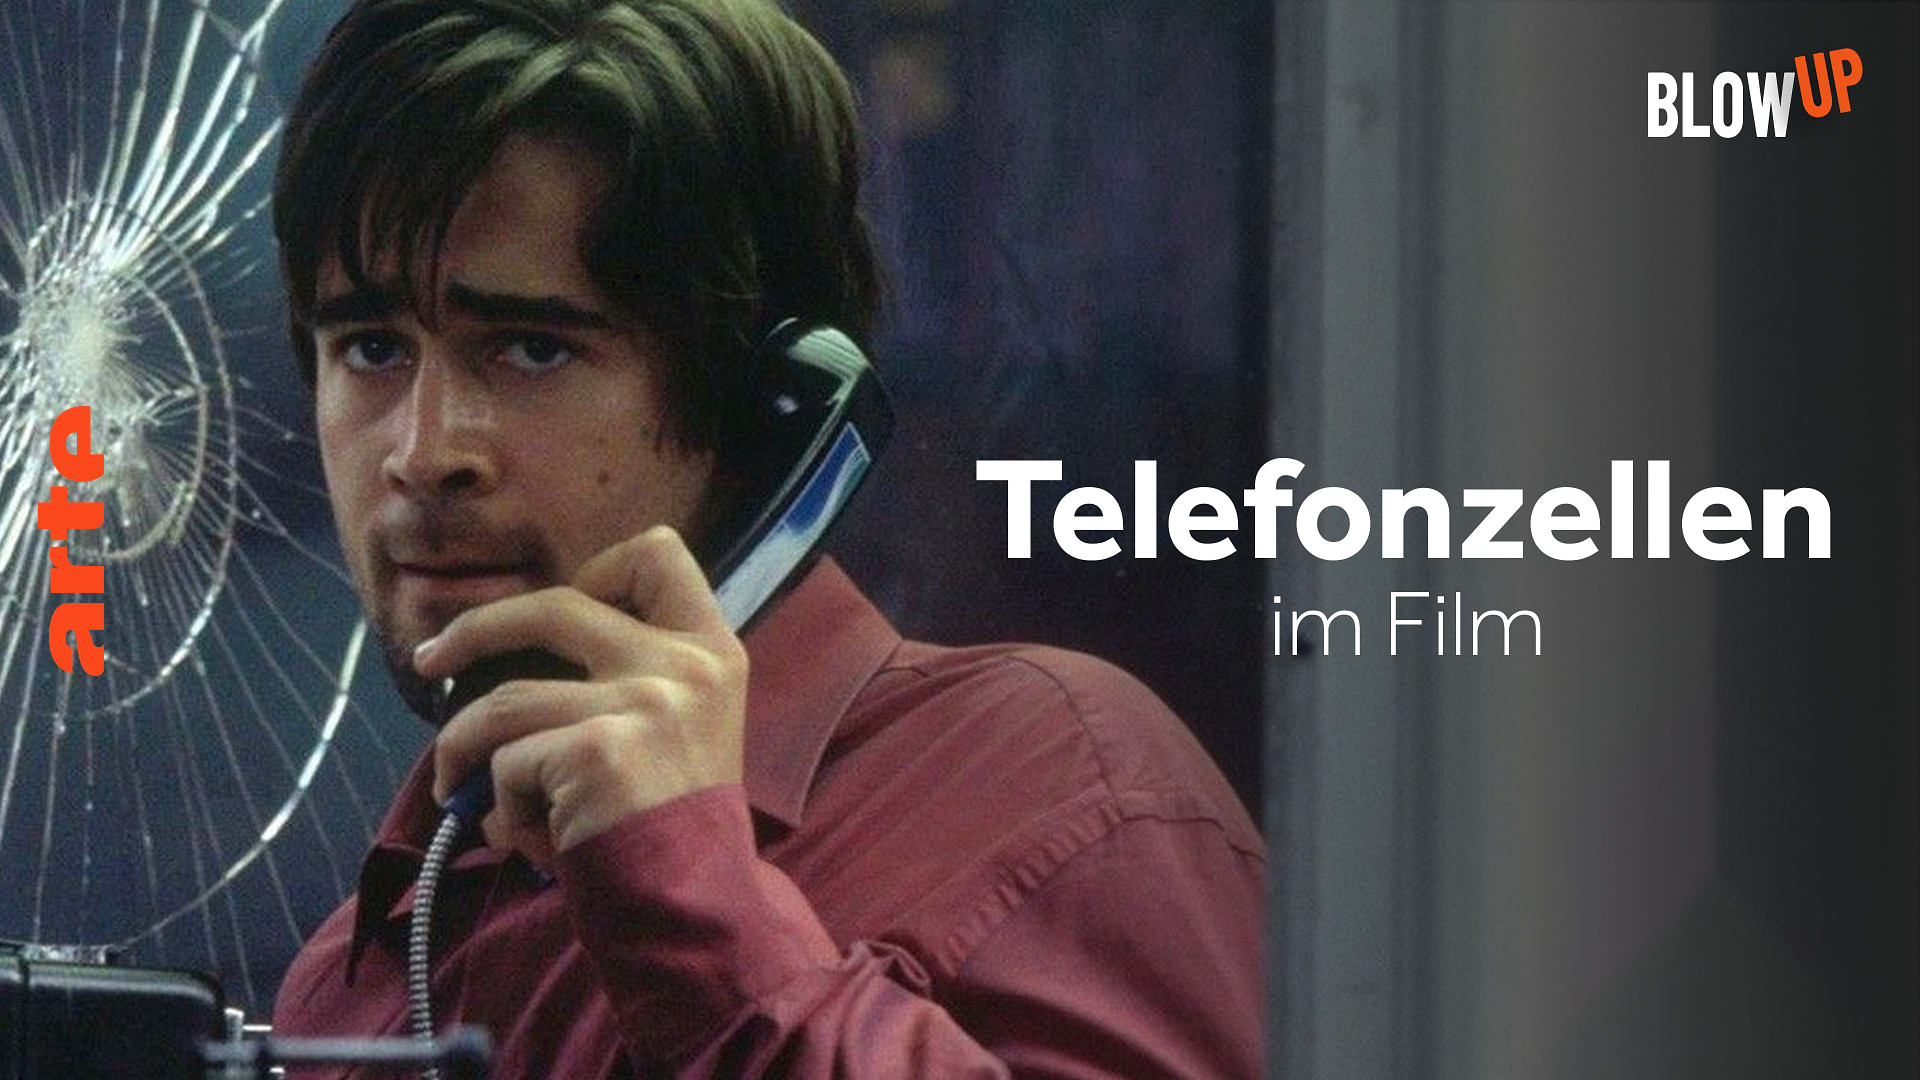 Blow up - Telefonzellen im Film